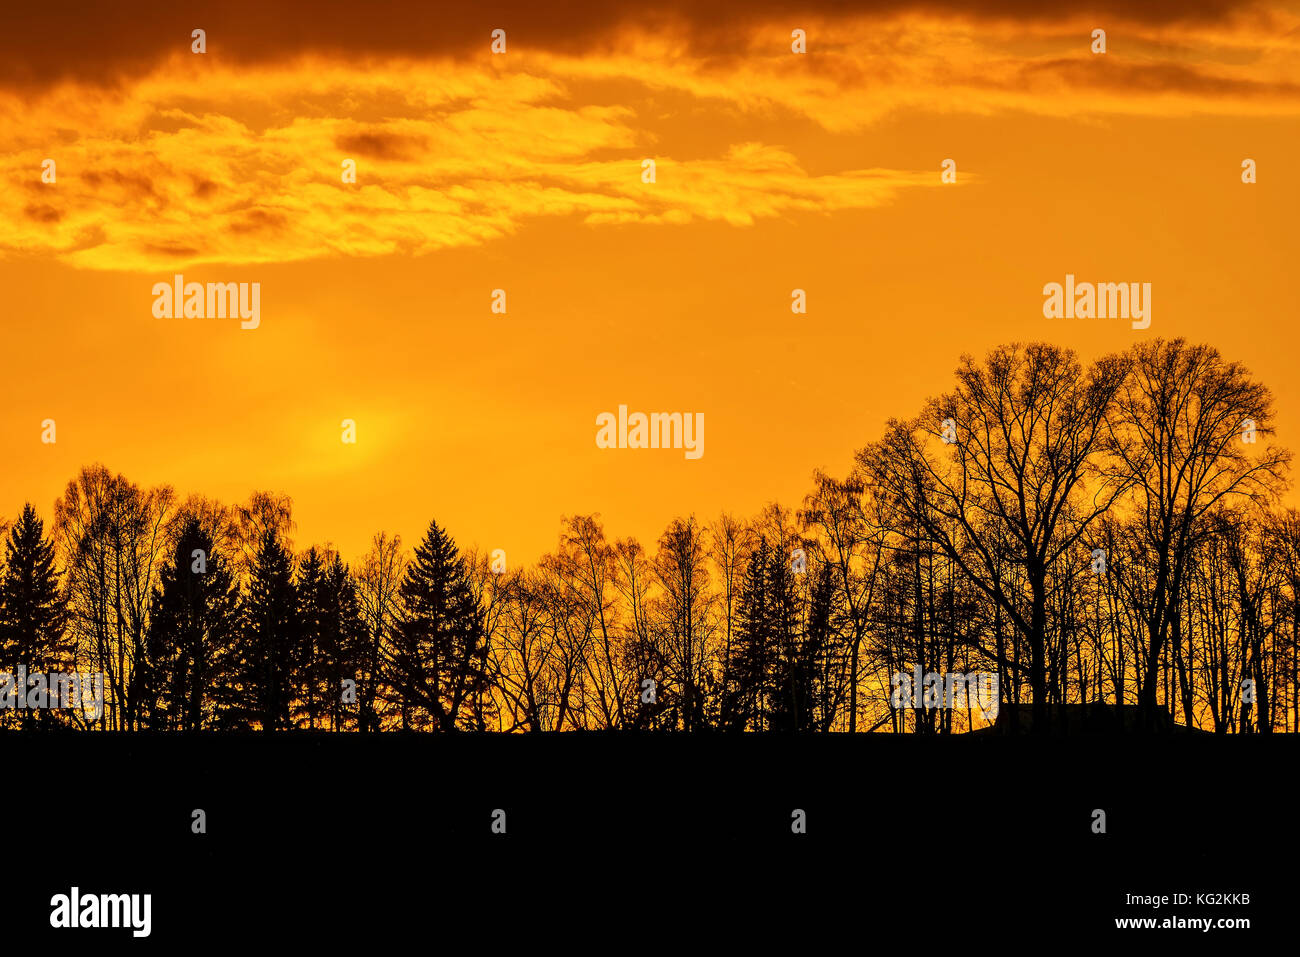 Colorato sfondo astratto con contorni neri di alberi contro uno sfondo di fiery orange sky e nuvole al tramonto Foto Stock